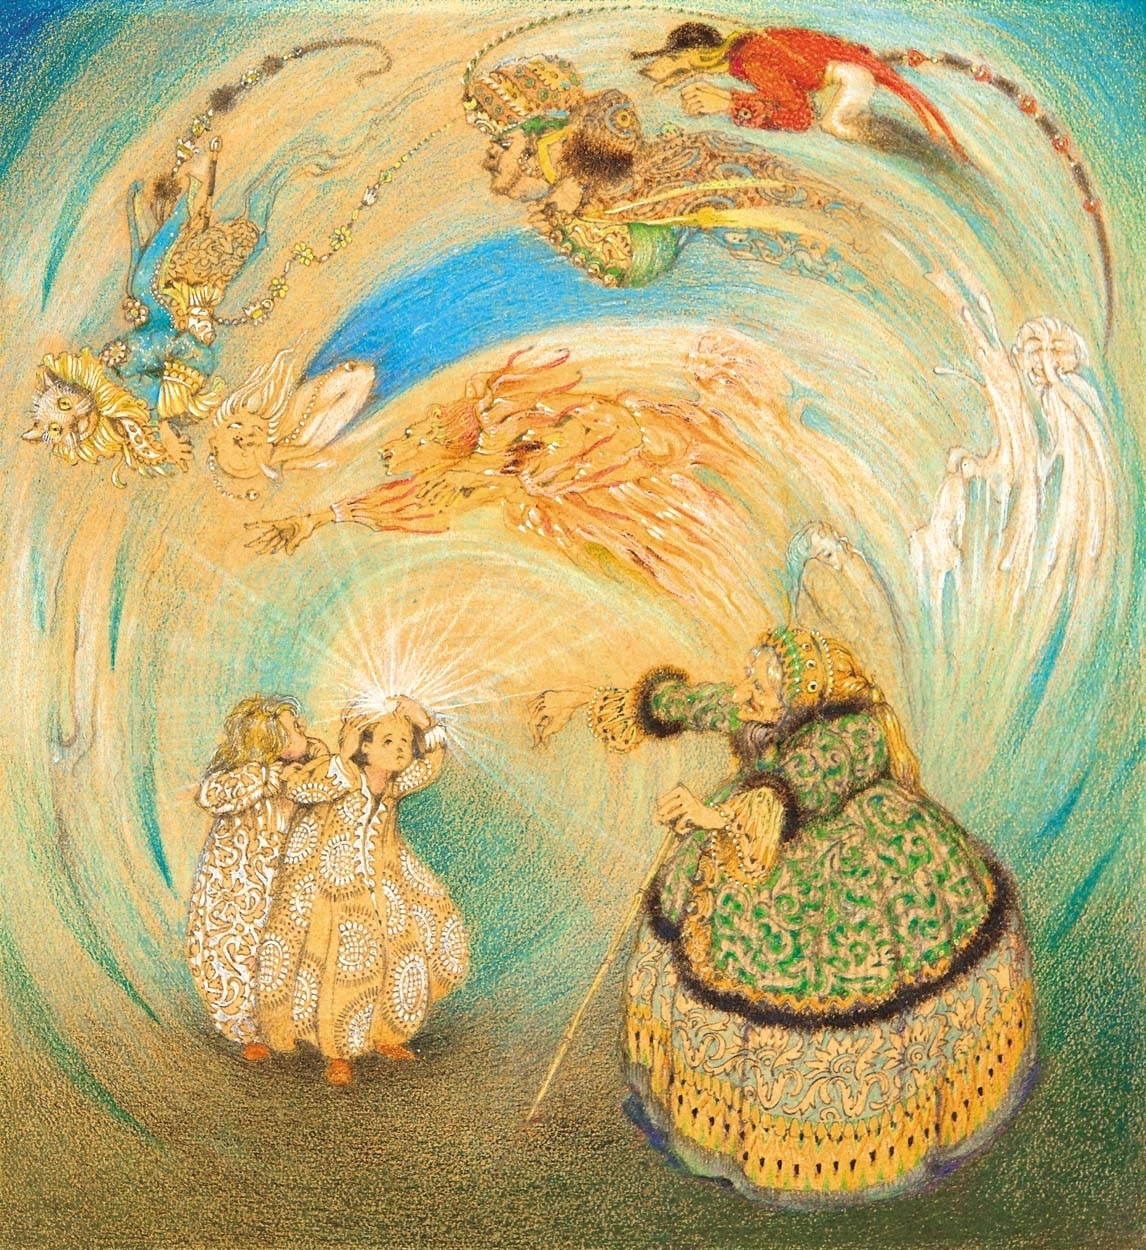 Jaschik Álmos (1885-1950) A csodagyémánt (Illusztráció Maurice Maeterlinck "Kék madár" című művéhez)